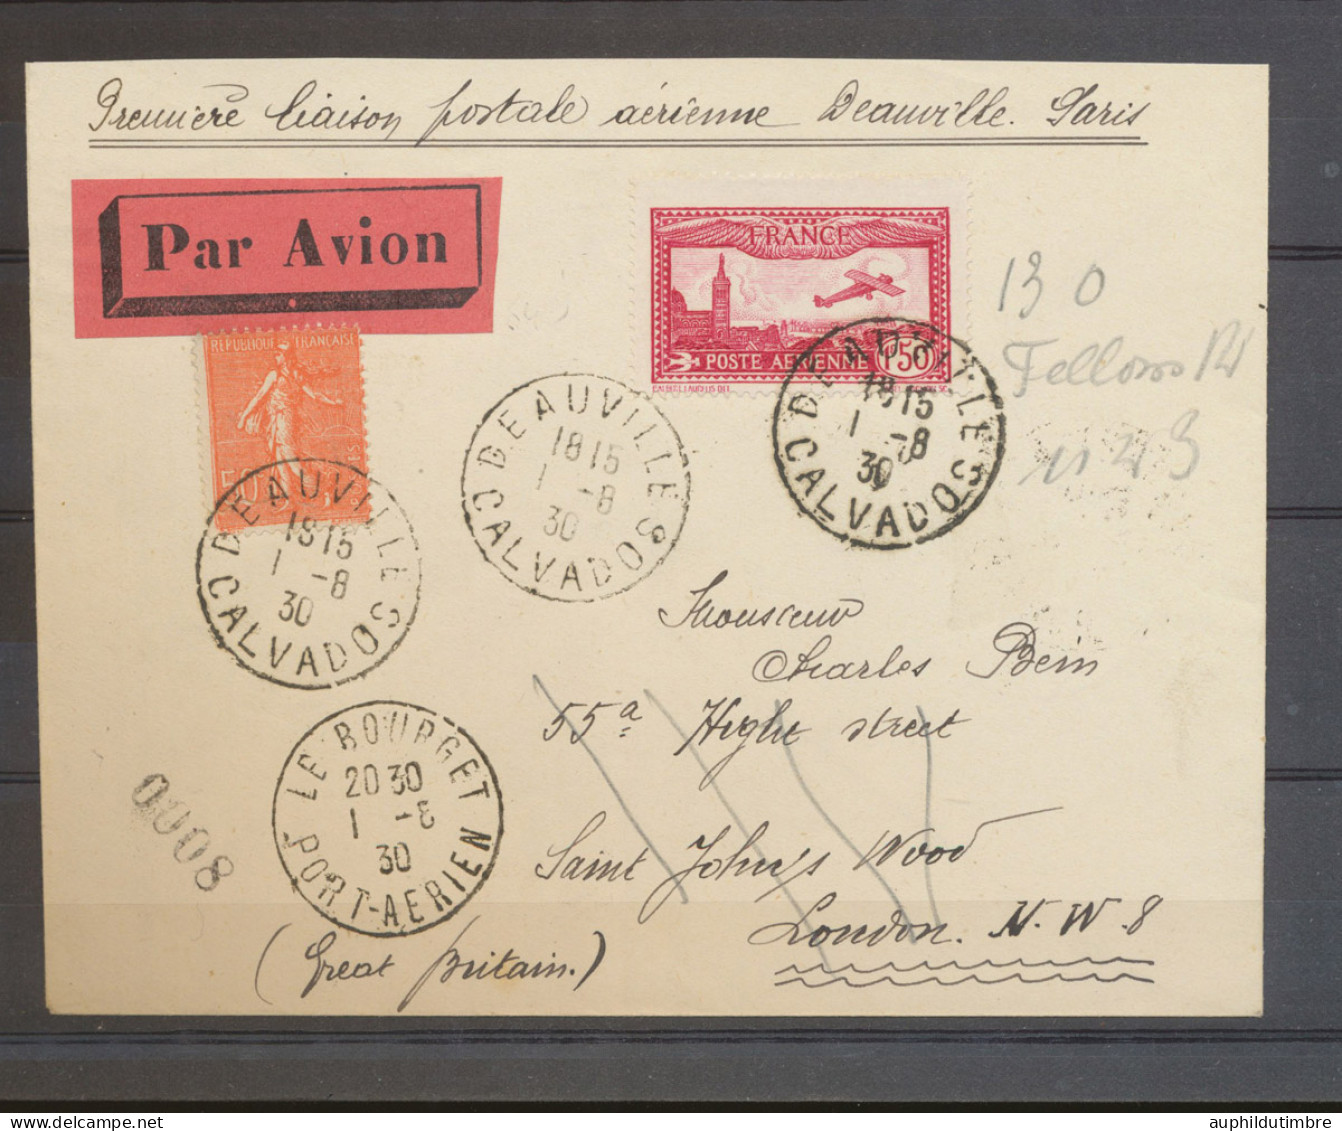 1930 Env. Première Liaison Postale AERIENNE DAUVILLE PARIS. RRR N3642 - 1921-1960: Periodo Moderno